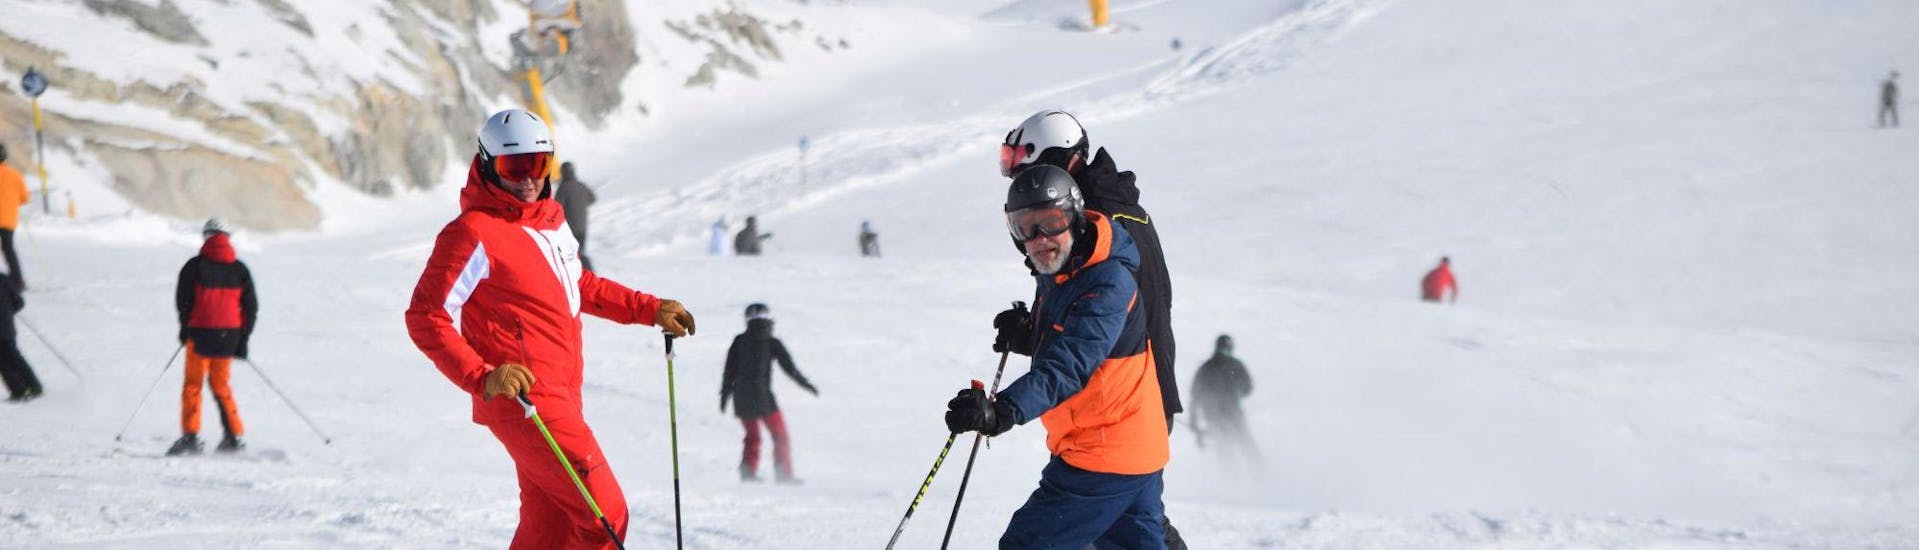 Clases de esquí para adultos a partir de 15 años para todos los niveles.